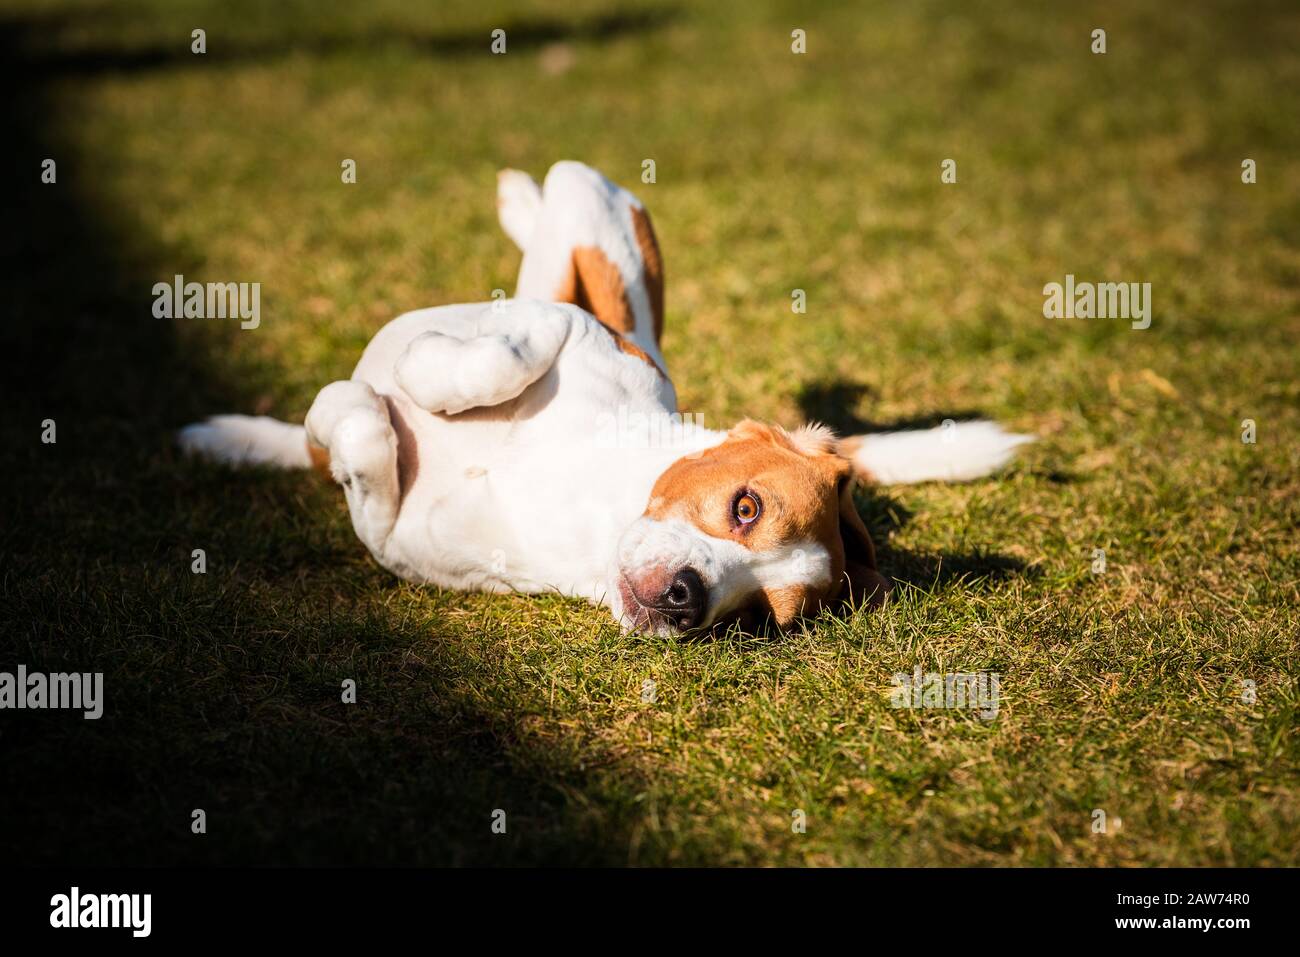 Le beagle se fauche et roule sur l'herbe. Le chien a du temps de relaxation allongé sur l'herbe verte au soleil. Banque D'Images